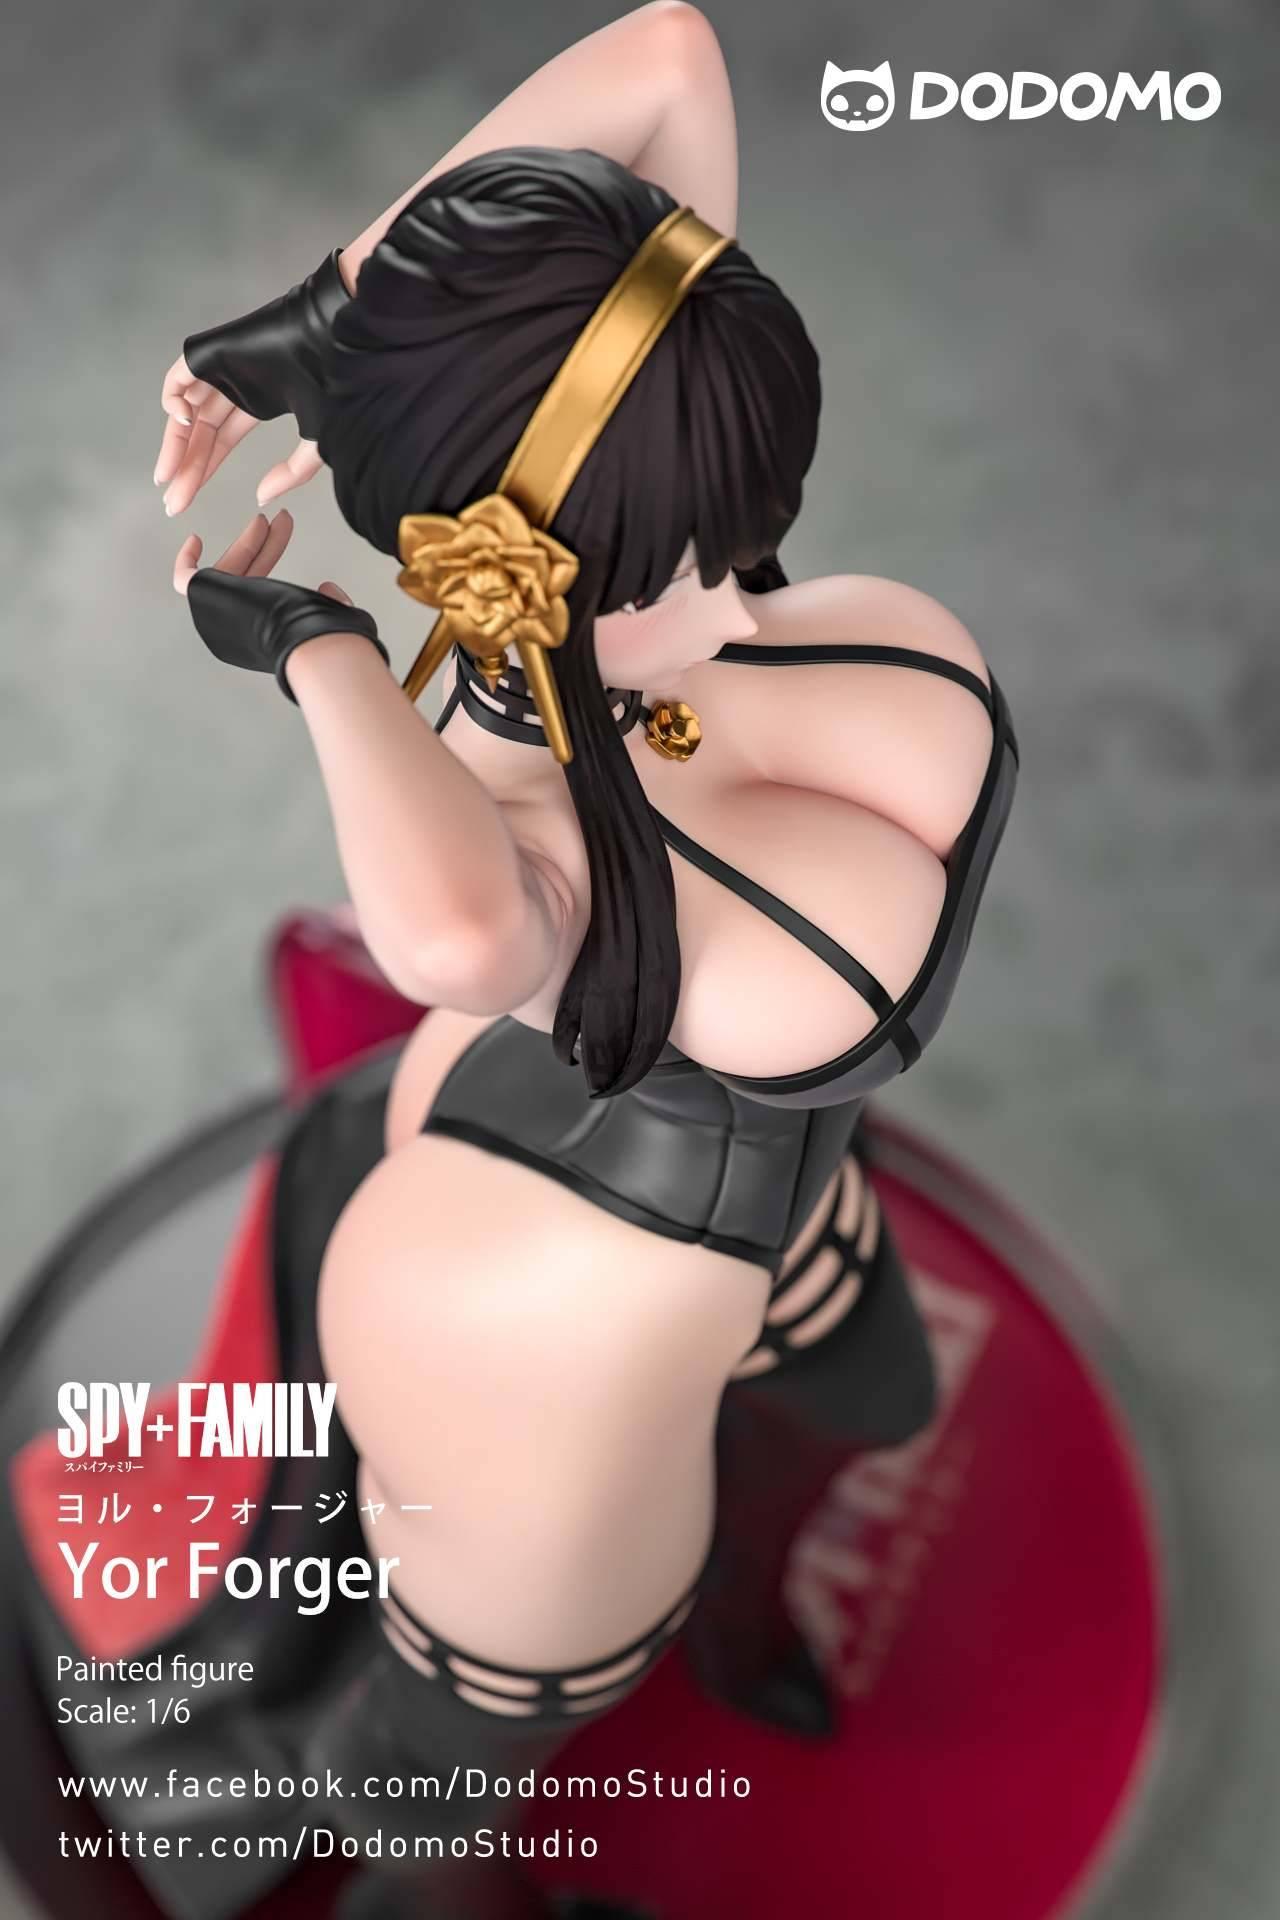 SPY x FAMILY – Yor Forger nos muestra grandes atributos expuestos con una figura muy erótica